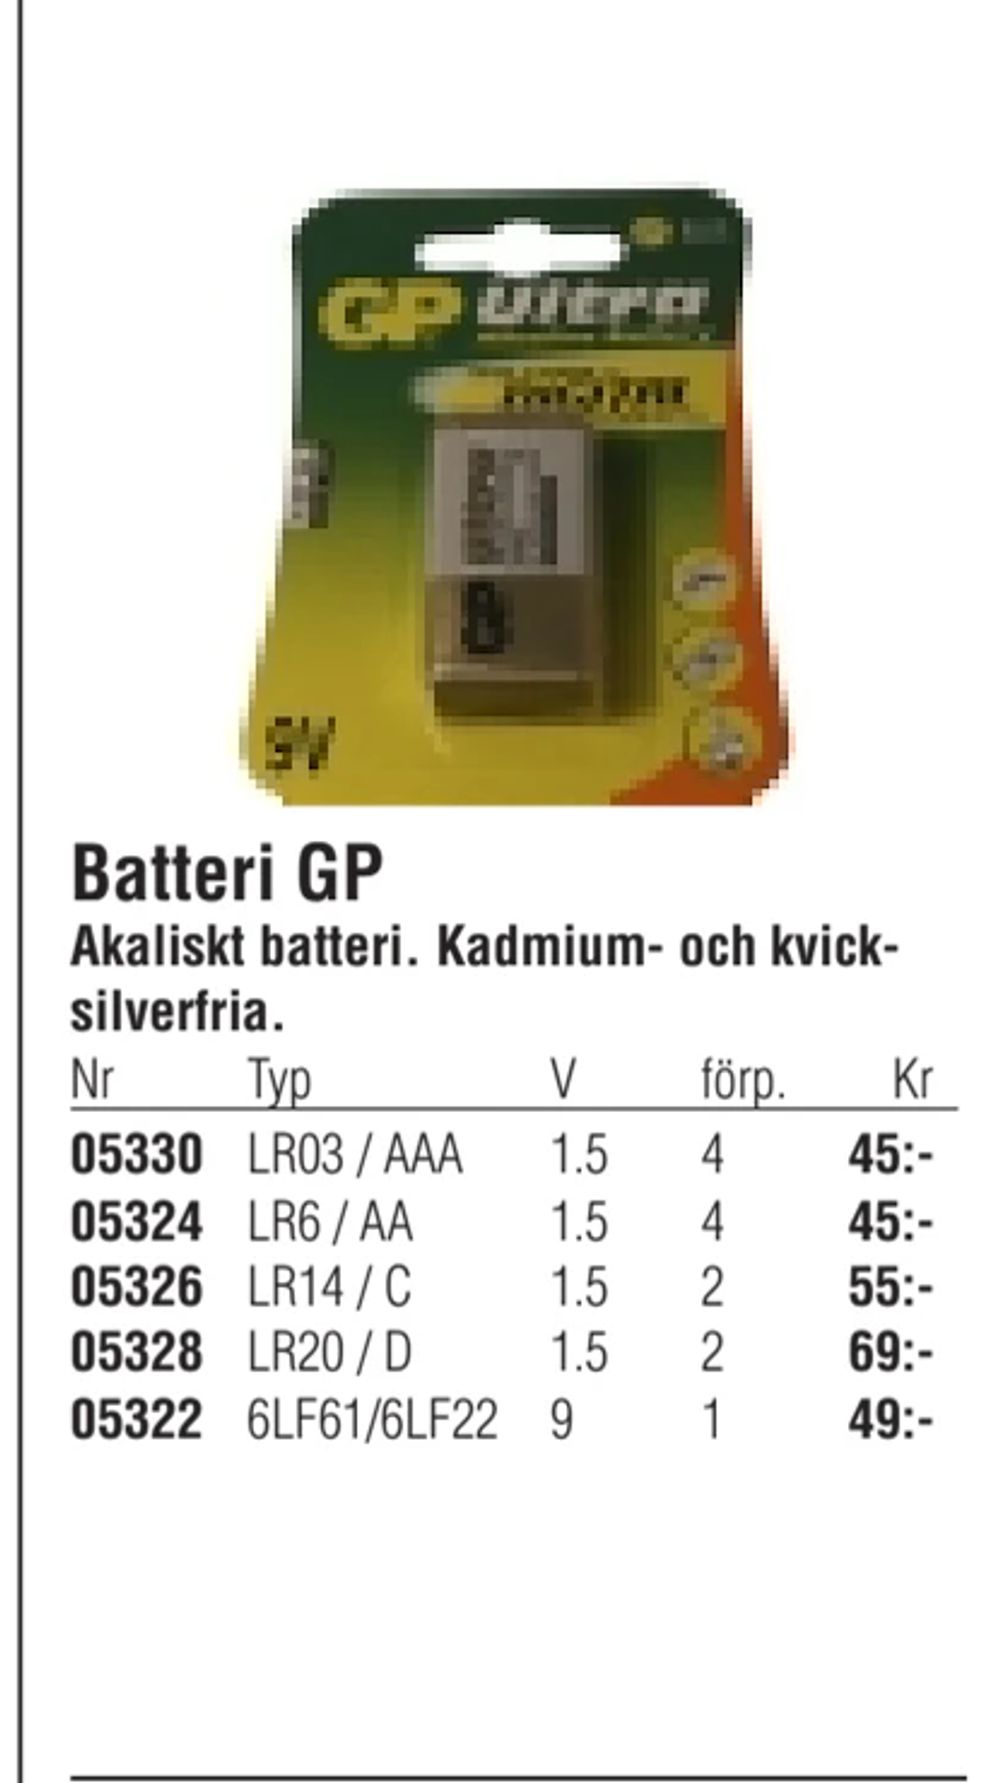 Erbjudanden på Batteri GP från Erlandsons Brygga för 45 kr